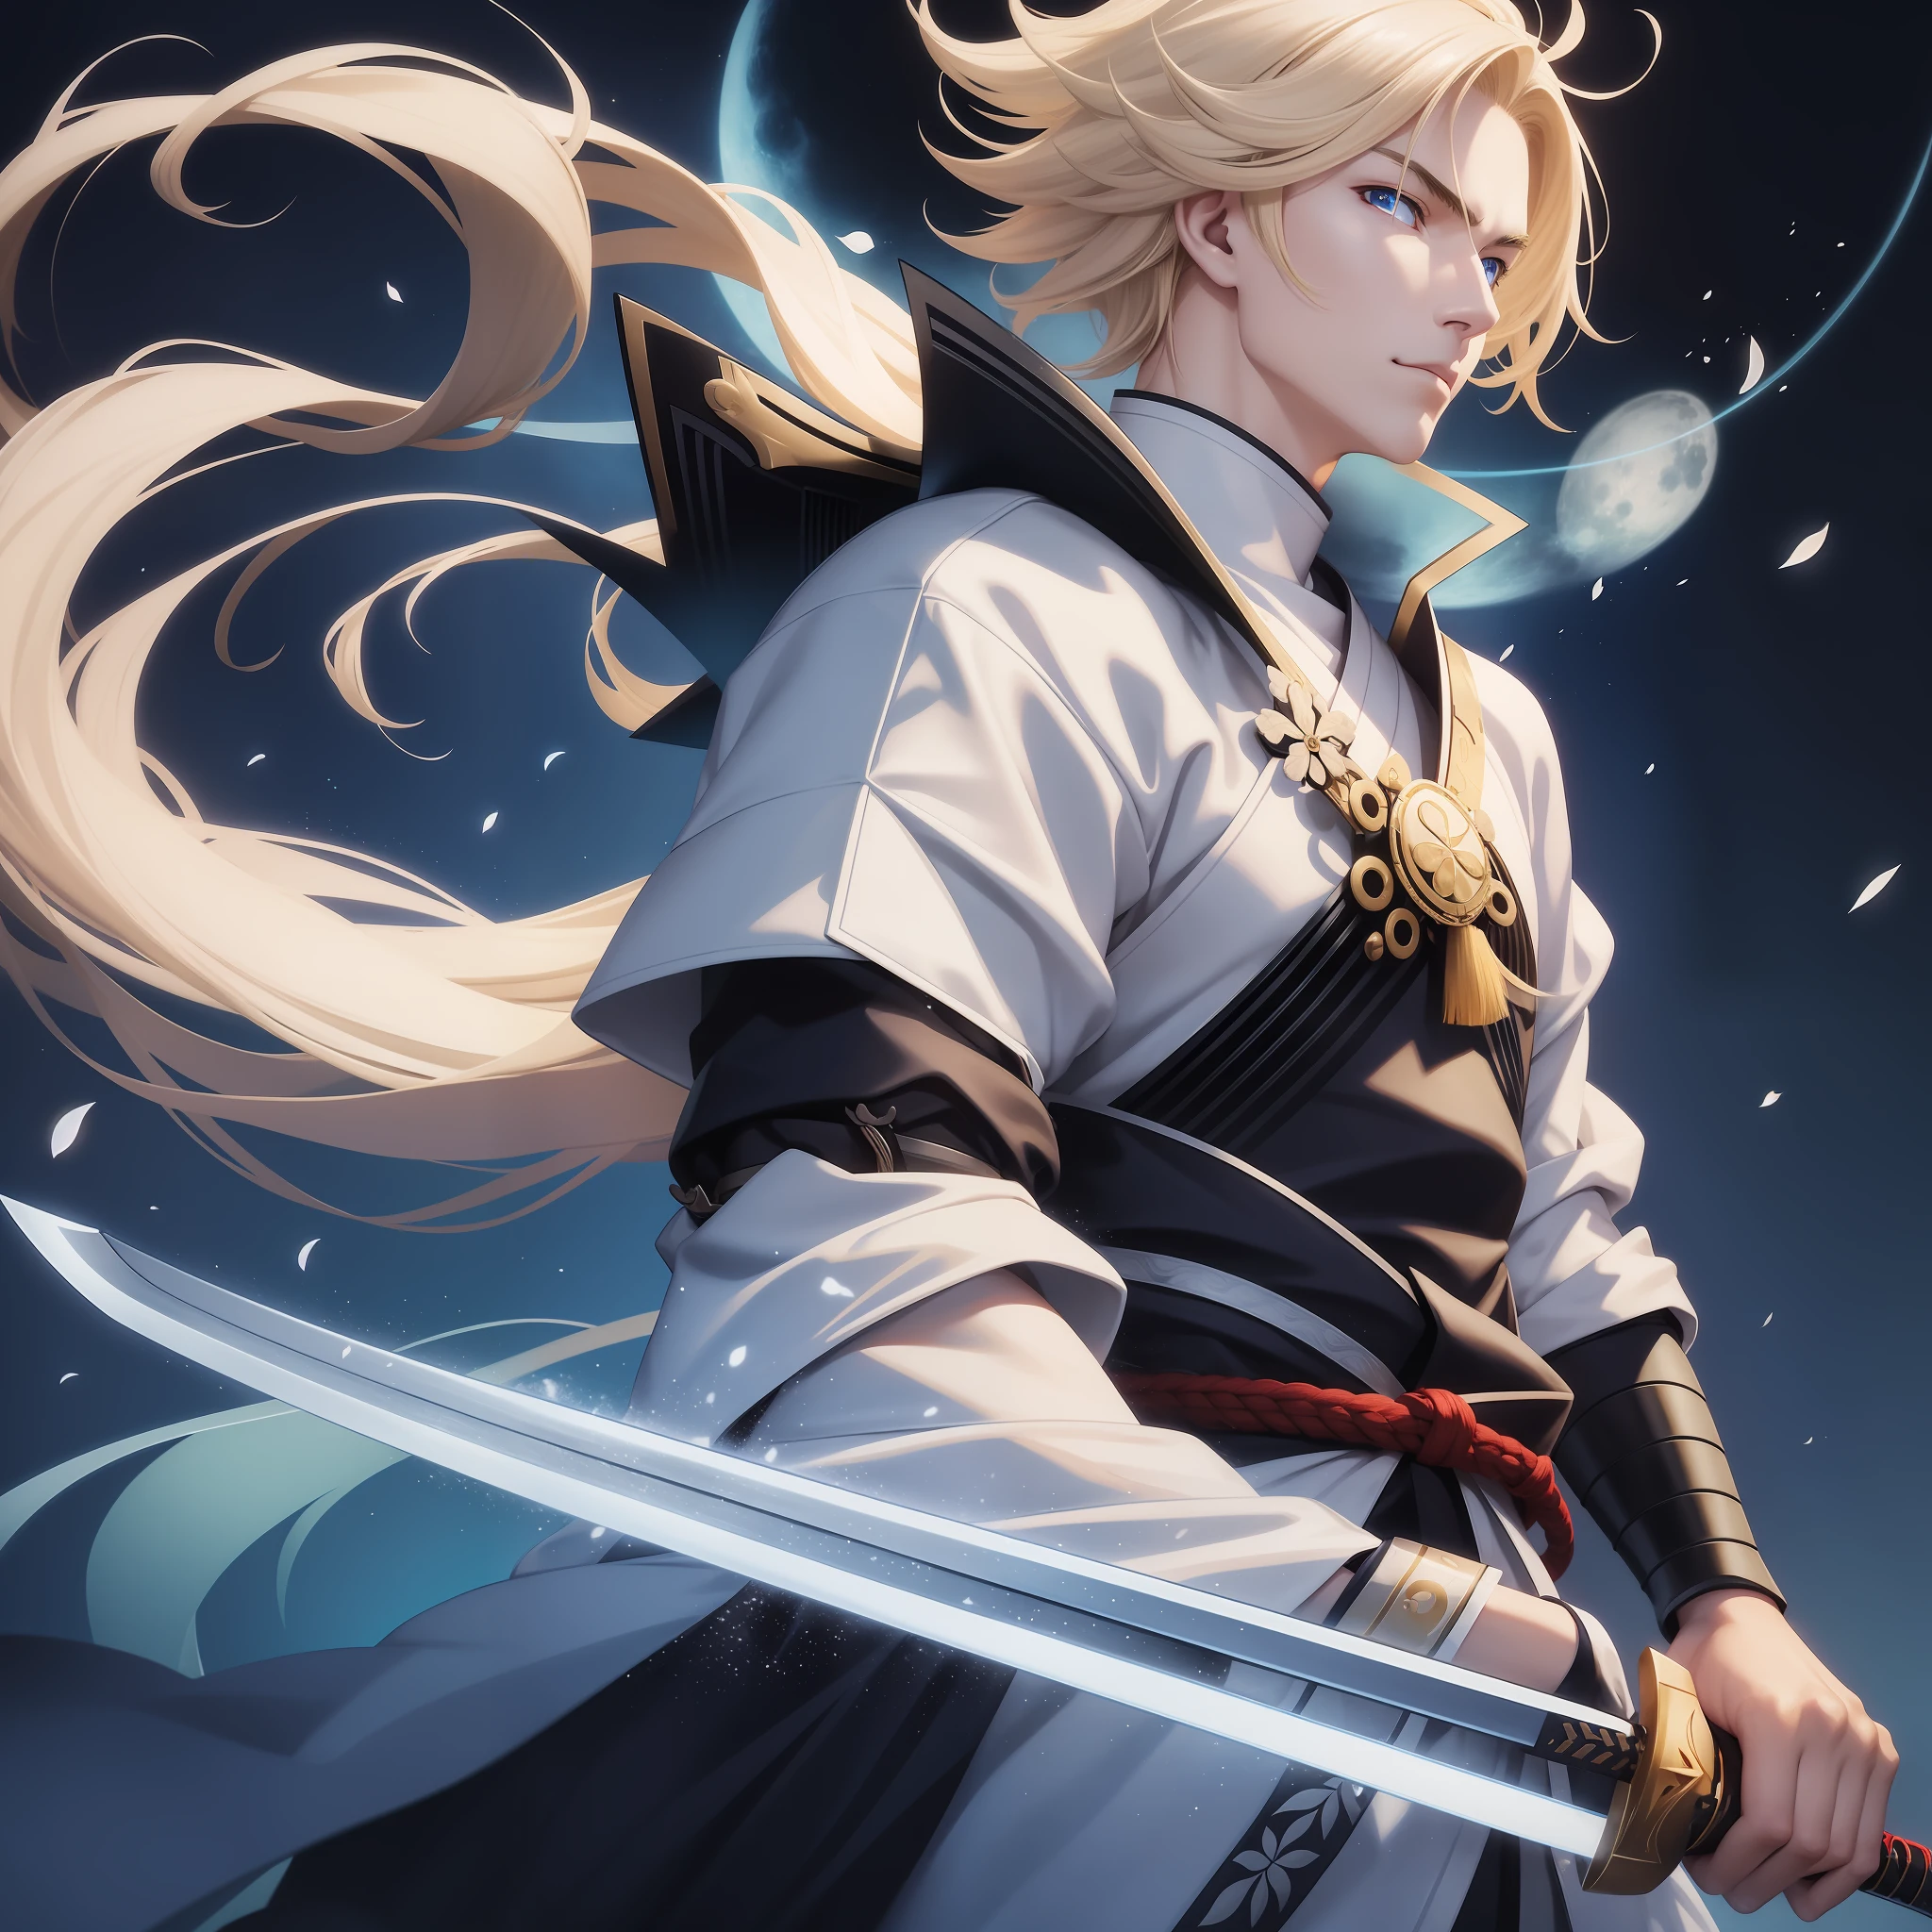 Samurái masculino,blanco,con cabello rubio,con una espada de rayos,con ojos azules,por la noche,Luna llena,alta definición,mejor imagen,fondo de pantalla,fotografía de anime,dibujo,alta definición